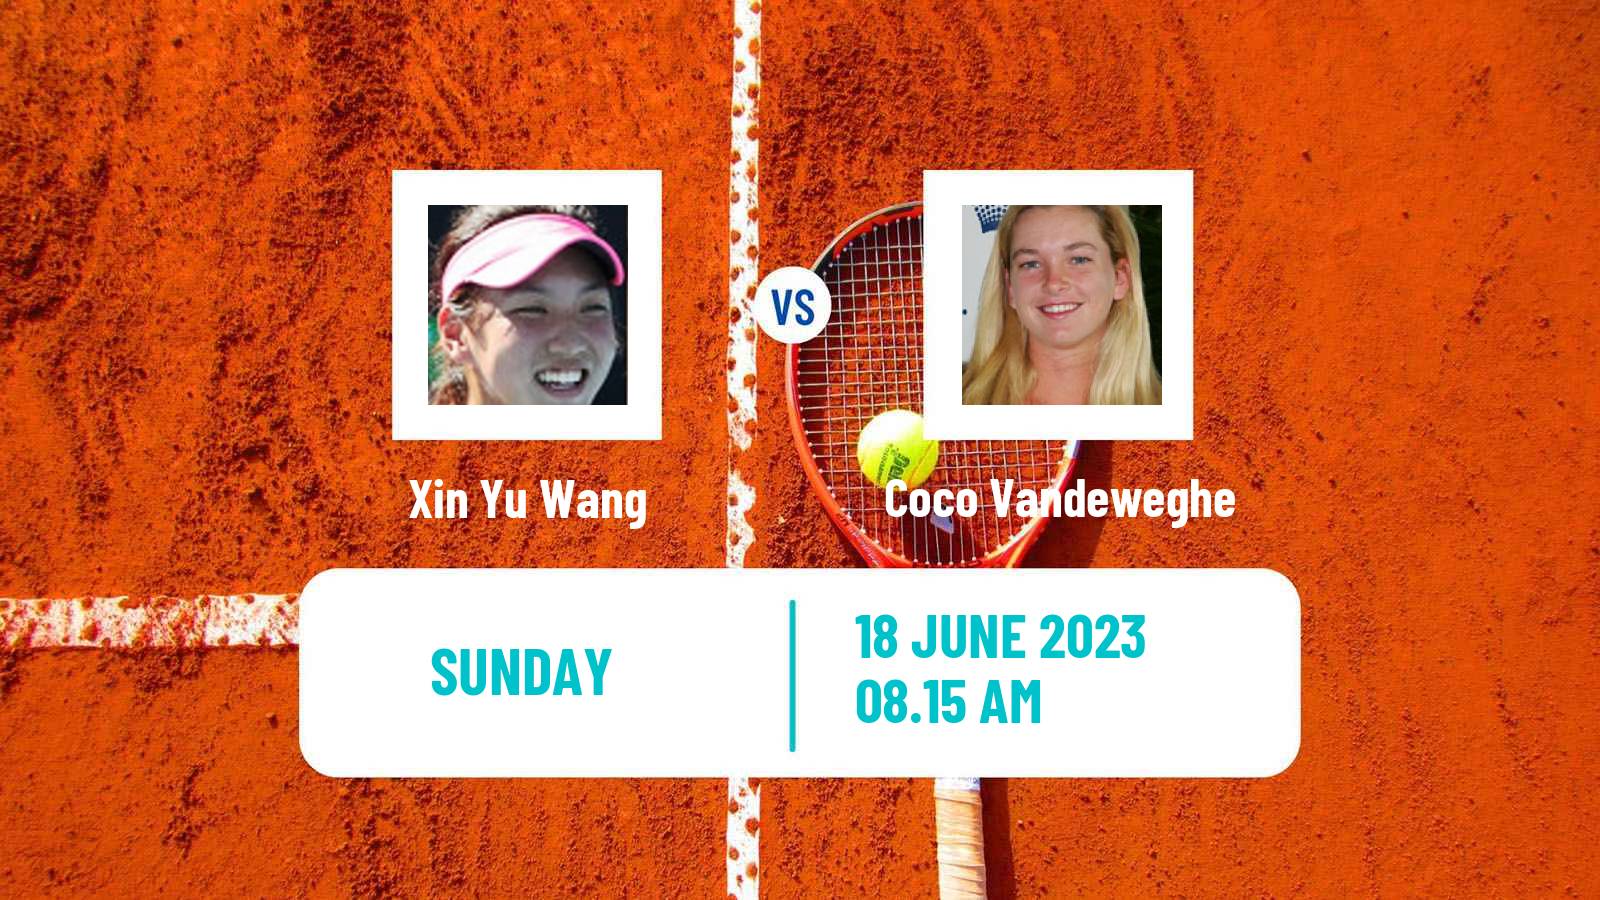 Tennis WTA Berlin Xin Yu Wang - Coco Vandeweghe